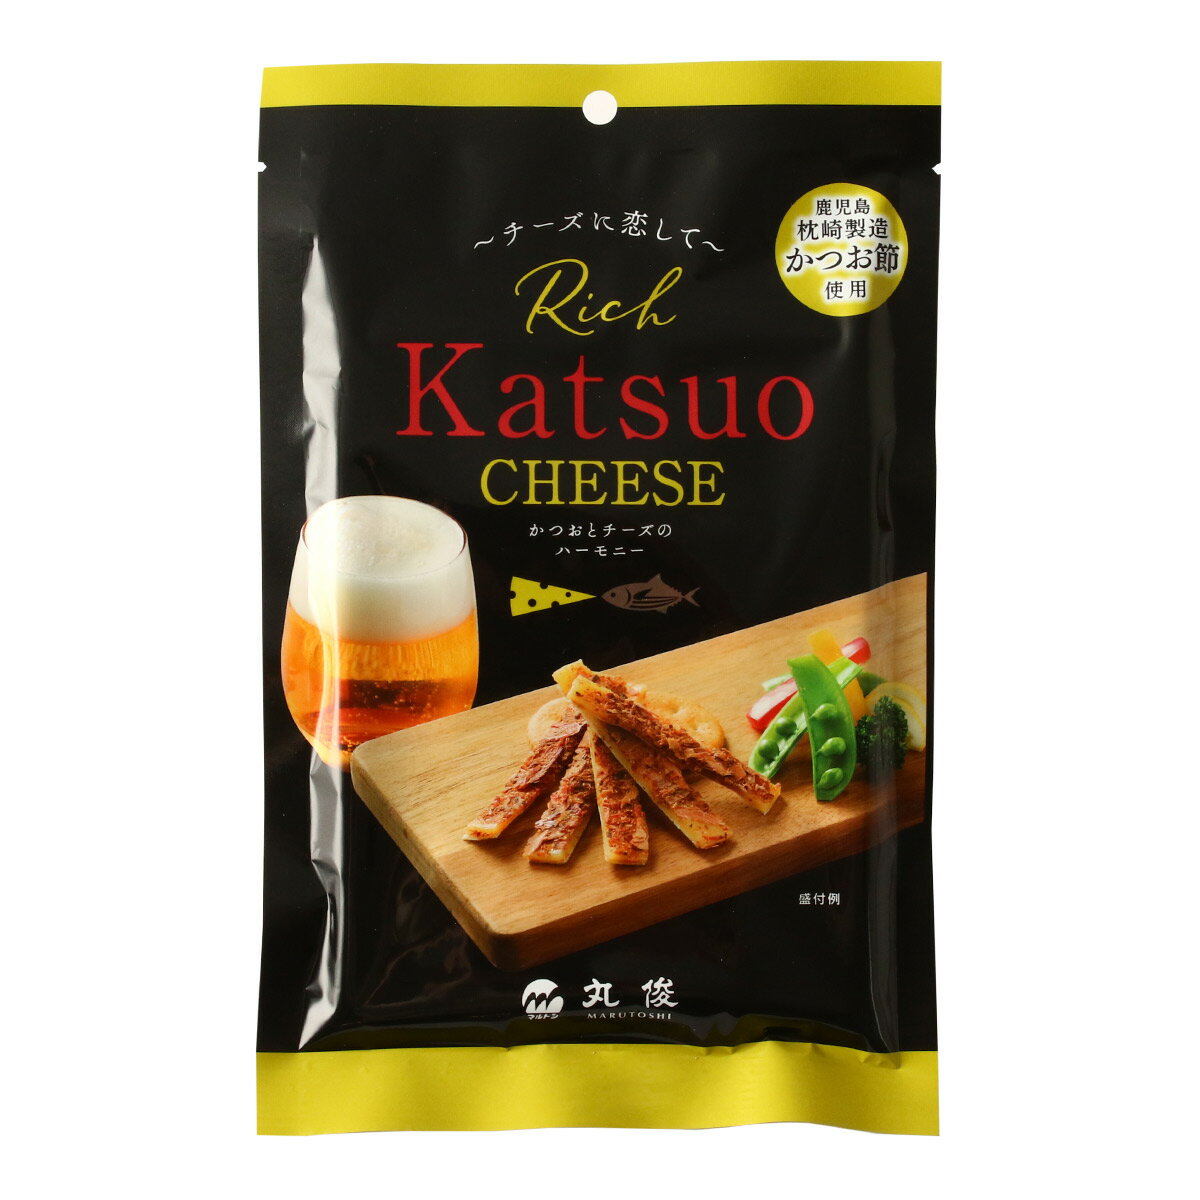 [丸俊] おつまみ チーズに恋して Rich Katsuo CHEESE 65g /チーズタラ チータラ チーズ かつお節 おつまみ おやつ